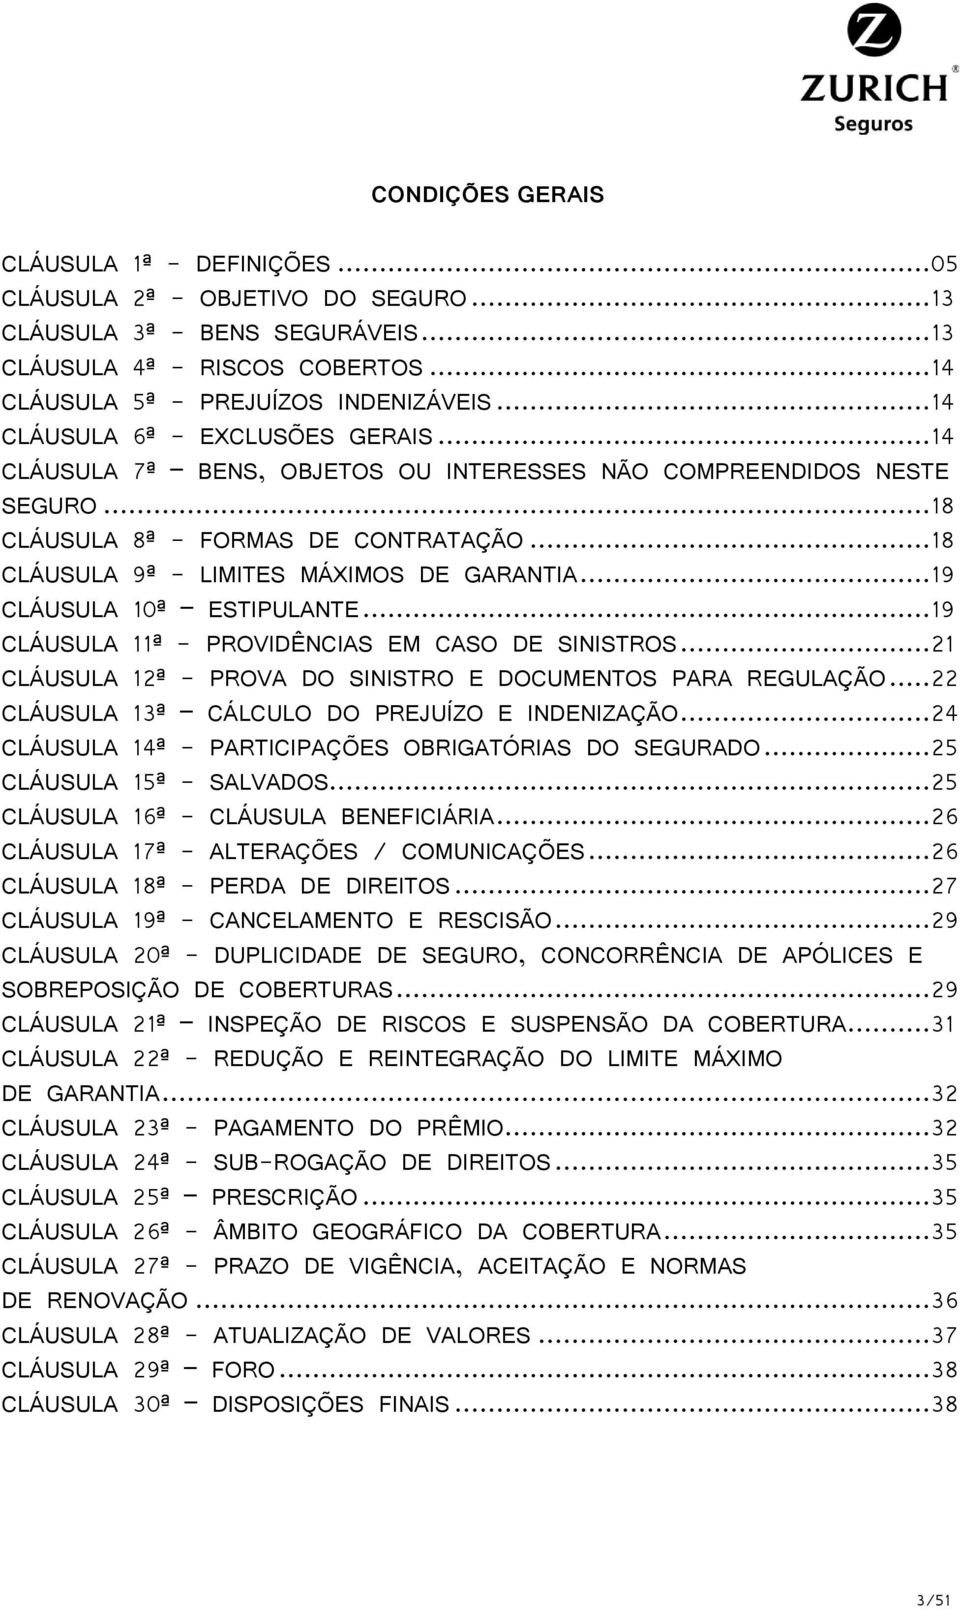 .. 18 CLÁUSULA 9ª - LIMITES MÁXIMOS DE GARANTIA... 19 CLÁUSULA 10ª ESTIPULANTE... 19 CLÁUSULA 11ª - PROVIDÊNCIAS EM CASO DE SINISTROS... 21 CLÁUSULA 12ª - PROVA DO SINISTRO E DOCUMENTOS PARA REGULAÇÃO.